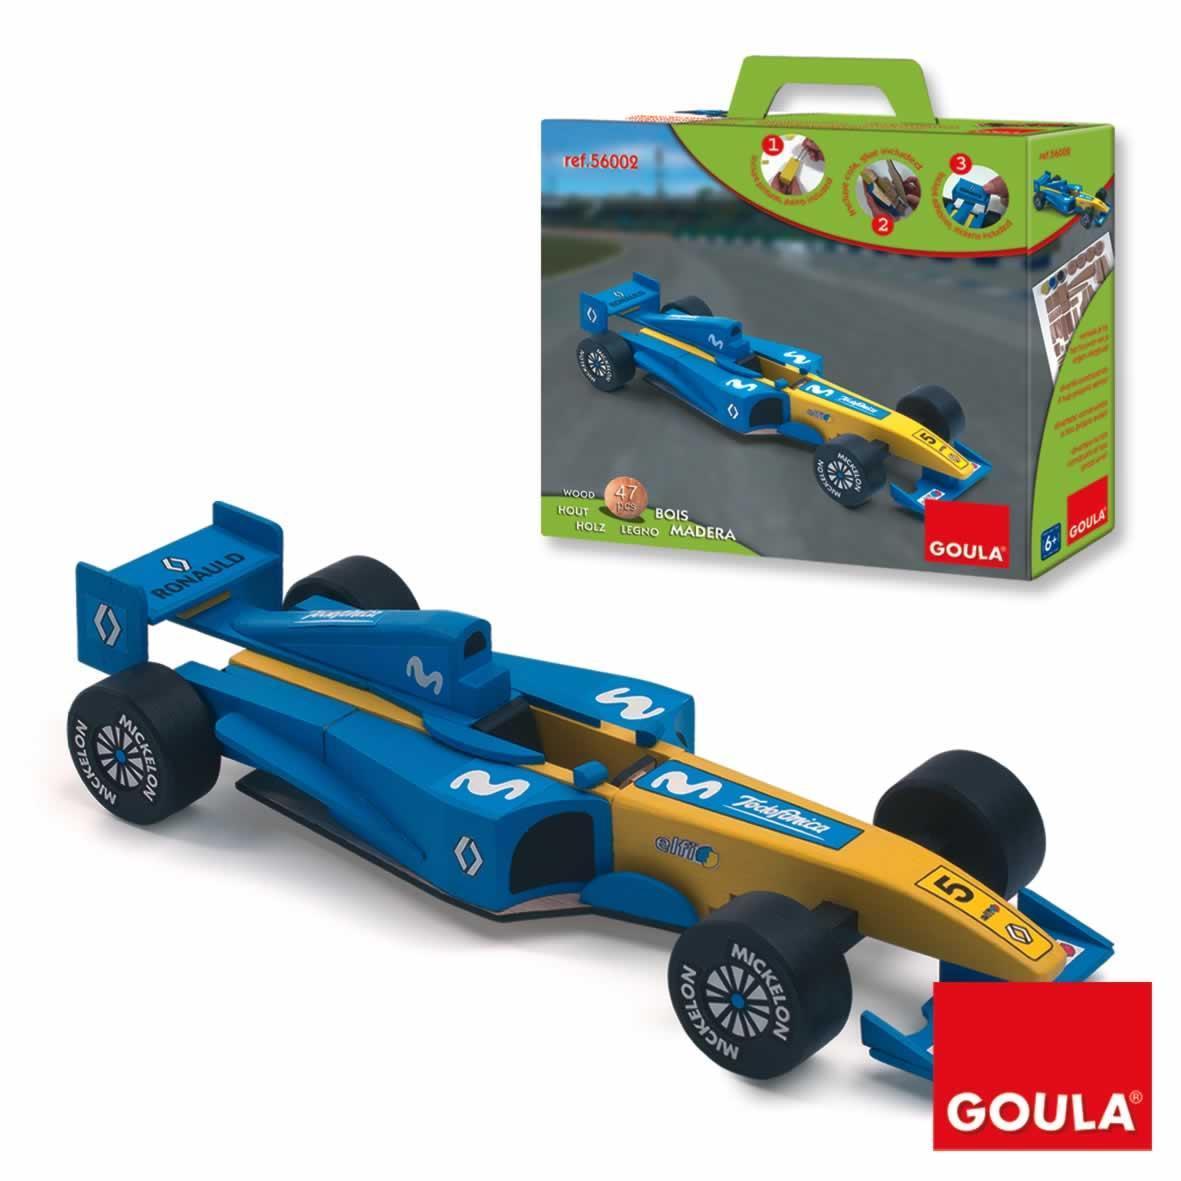 Foto GOULA 56002 Fórmula 1 azul